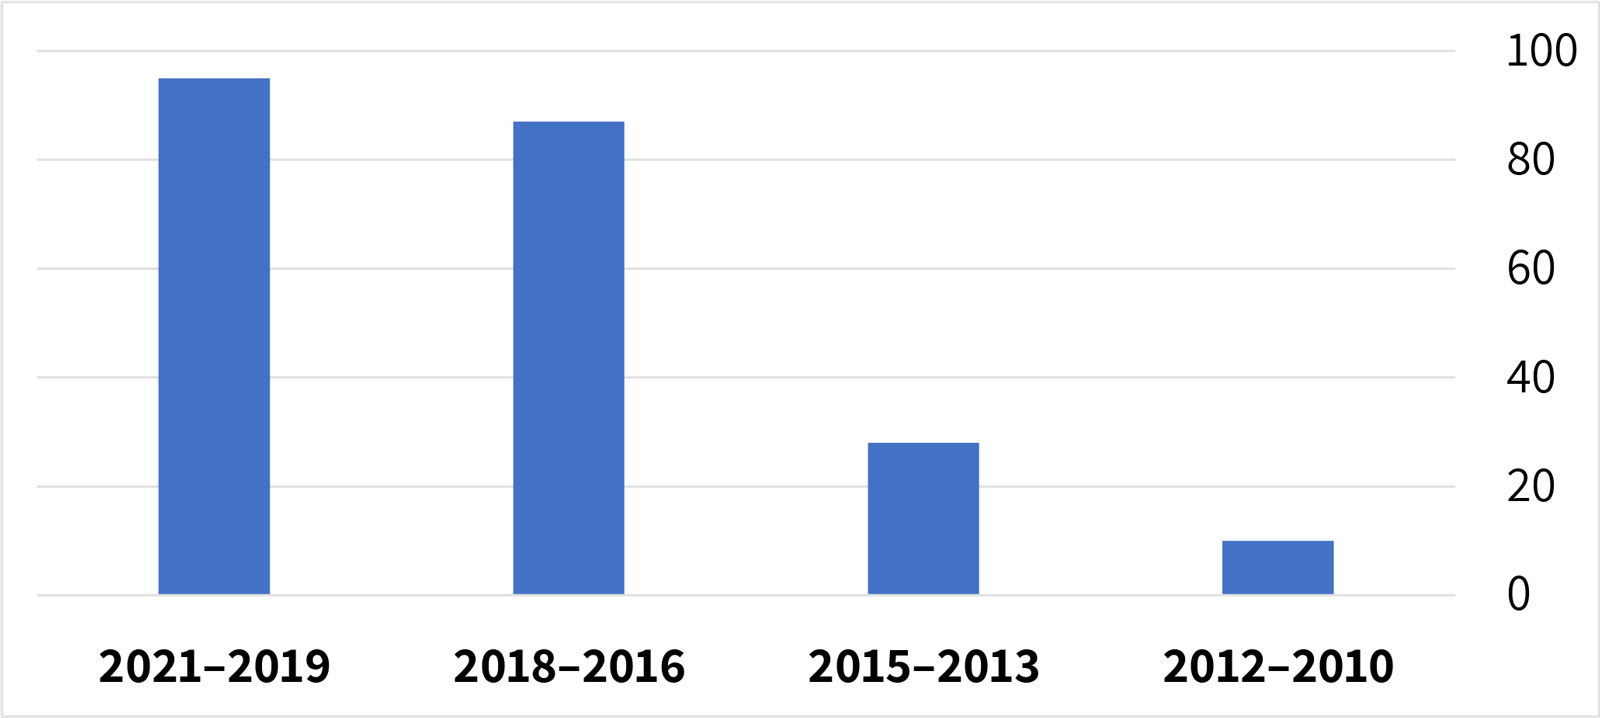 התרשים מציג את היקף הייצוג התקשורתי של רעיון הסטארט־אפ ניישן בשנים 2010–2021 (לפי מספר האזכורים). מן הנתונים נראית עלייה עקבית בכמות אזכורי הרעיון לאורך השנים. לעומת השנים הראשונות, שבהן היו לו אזכורים בודדים בטקסט העיתונאי, בשנים האחרונות היו עשרות אזכורים. 10 אזכורים בשנים 2010–2012 28 אזכורים בשנים 2013–2015 87 אזכורים בשנים 2016–2018 95 אזכורים בשנים 2019–2021